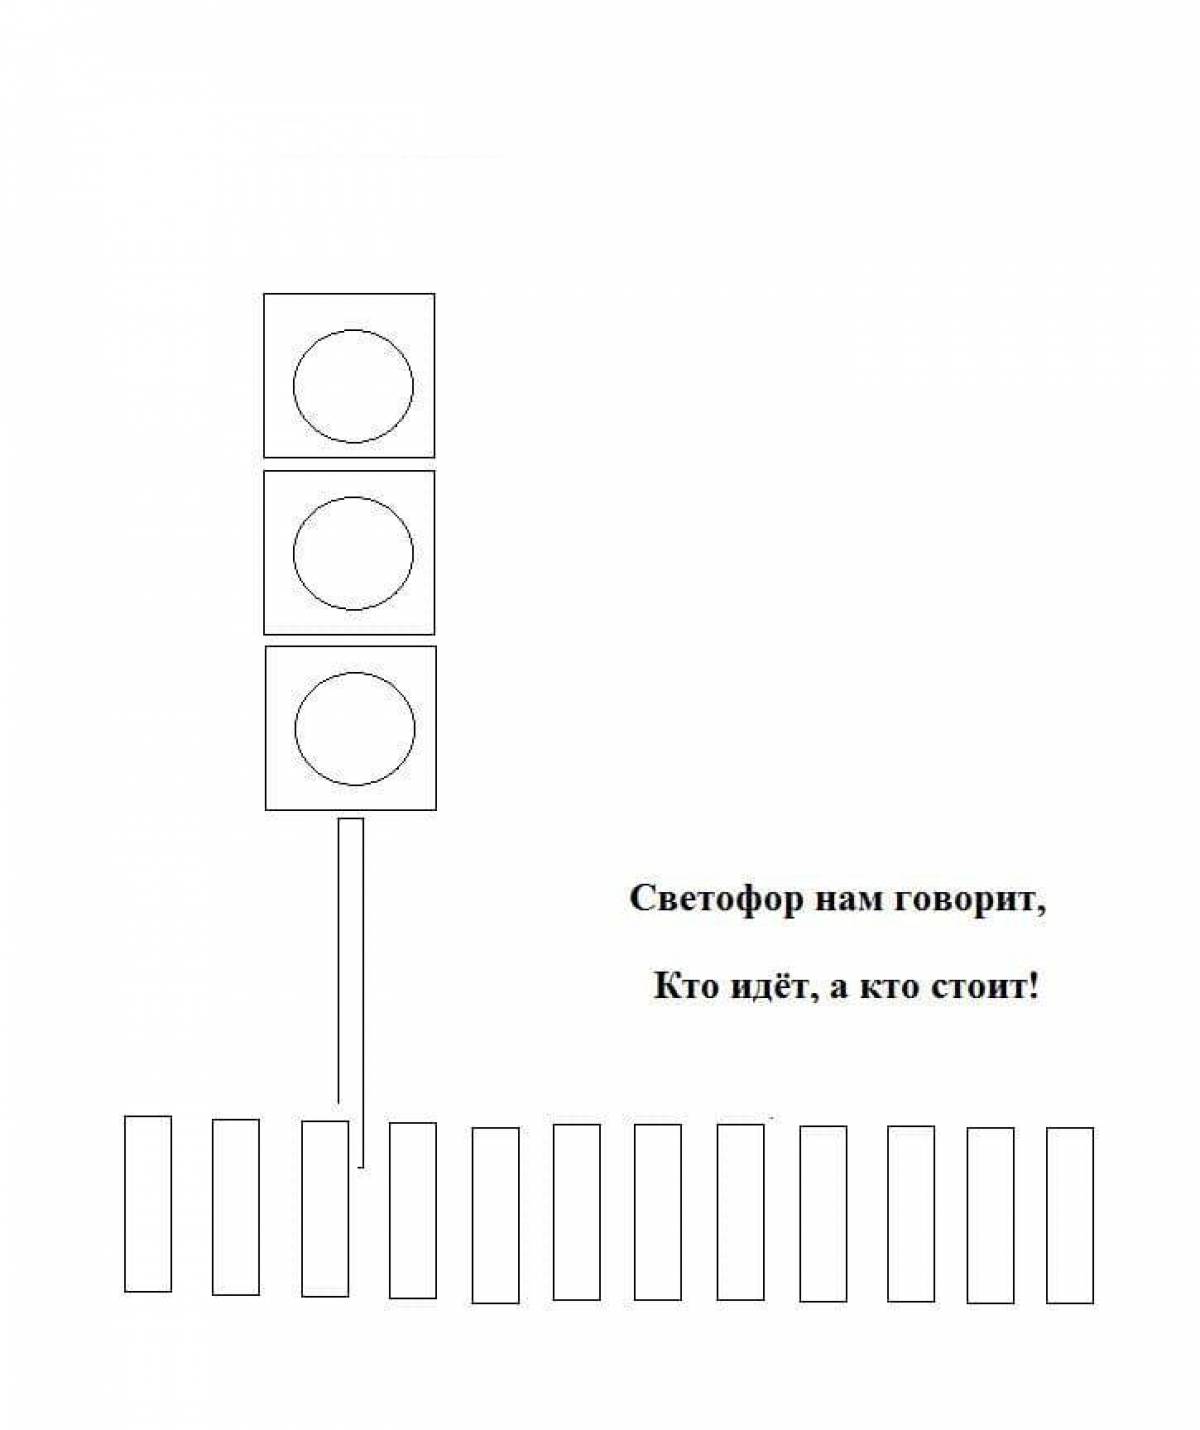 Traffic light for children 6 7 years old #3